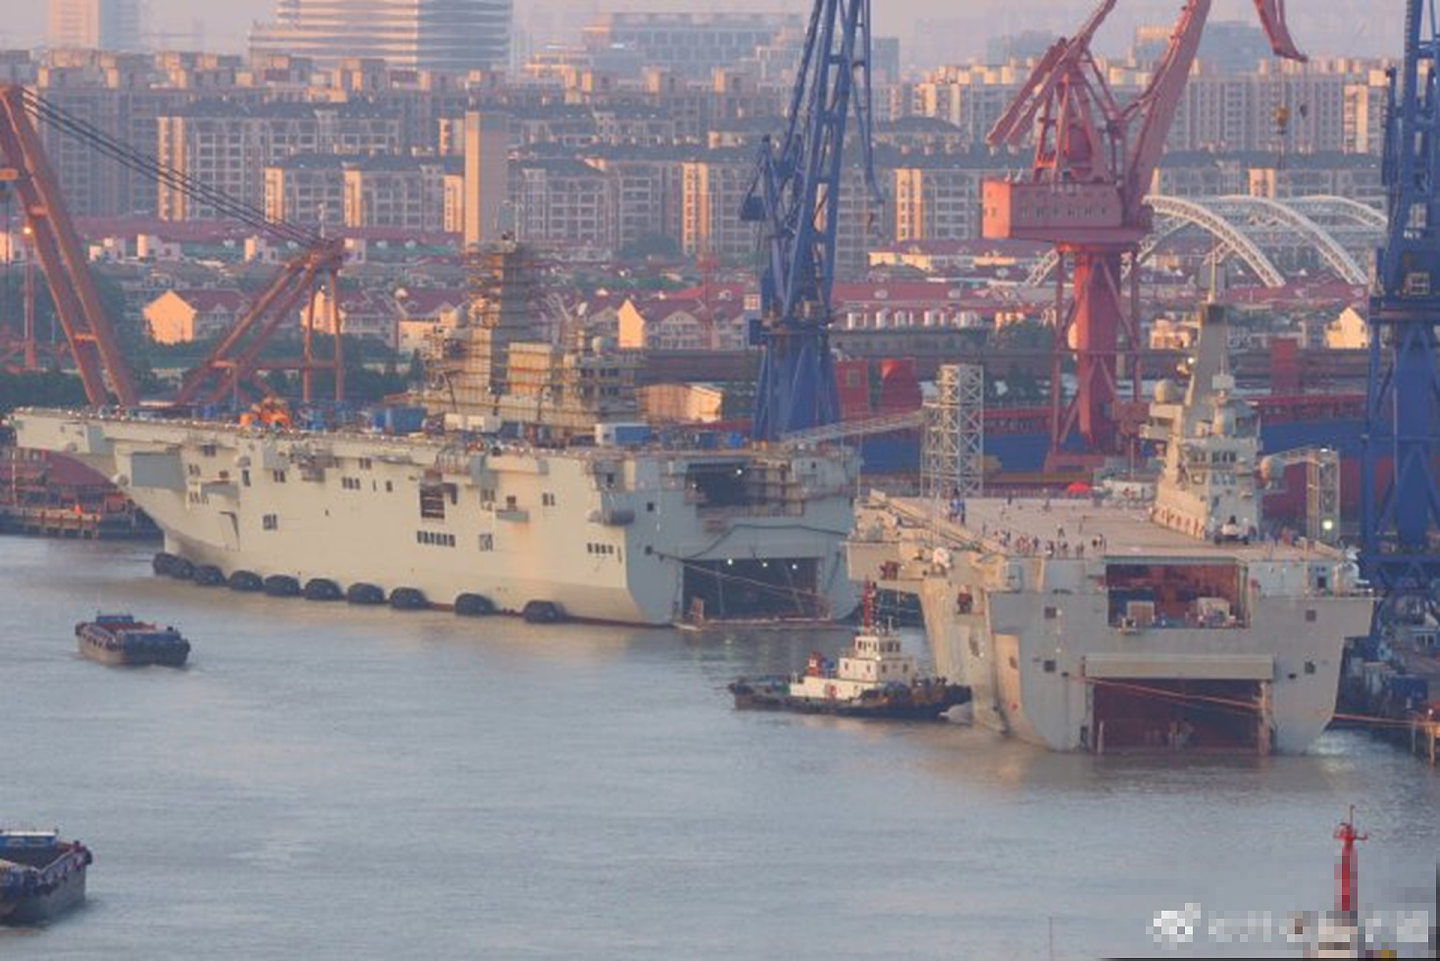 075型两栖攻击舰是中国海军最大的两栖战舰。（微博@开心包子铺）